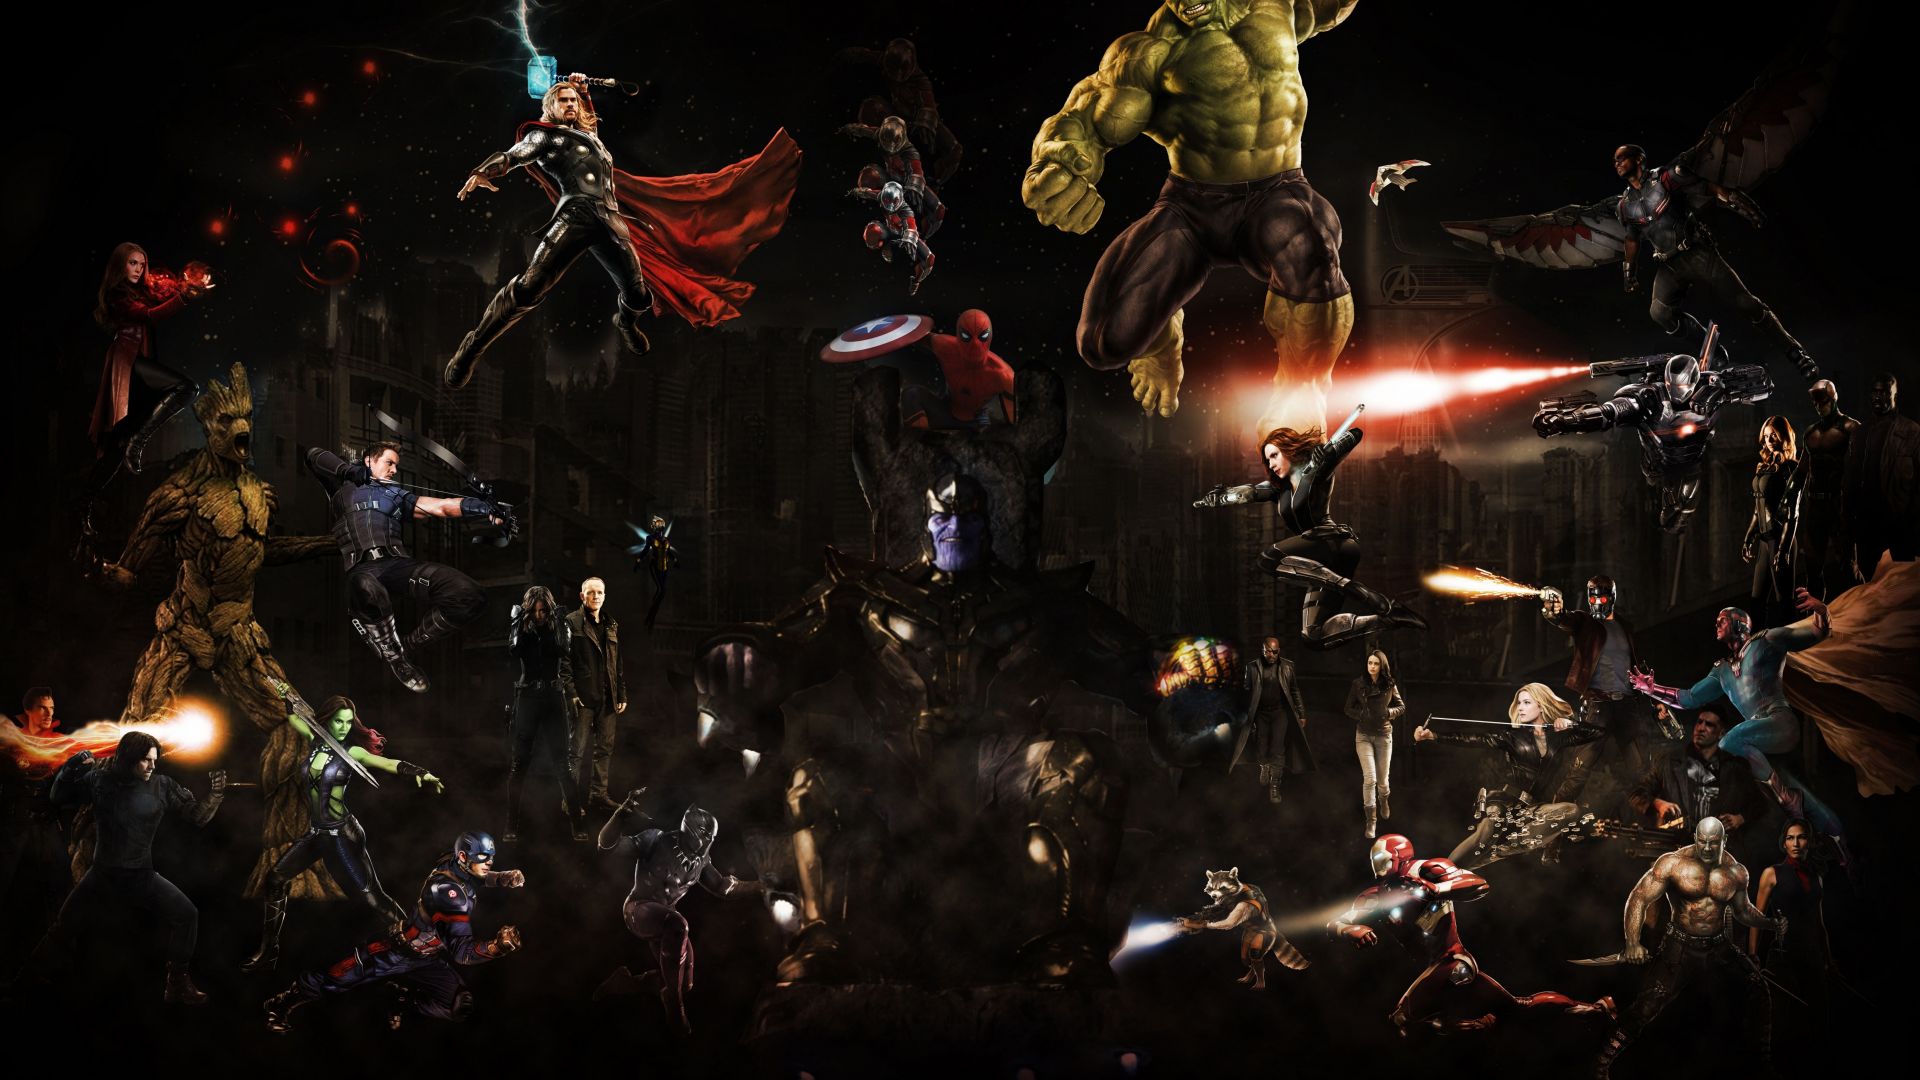 Wallpaper Avengers: infinity war, 2018 movie, fan artwork, 5k